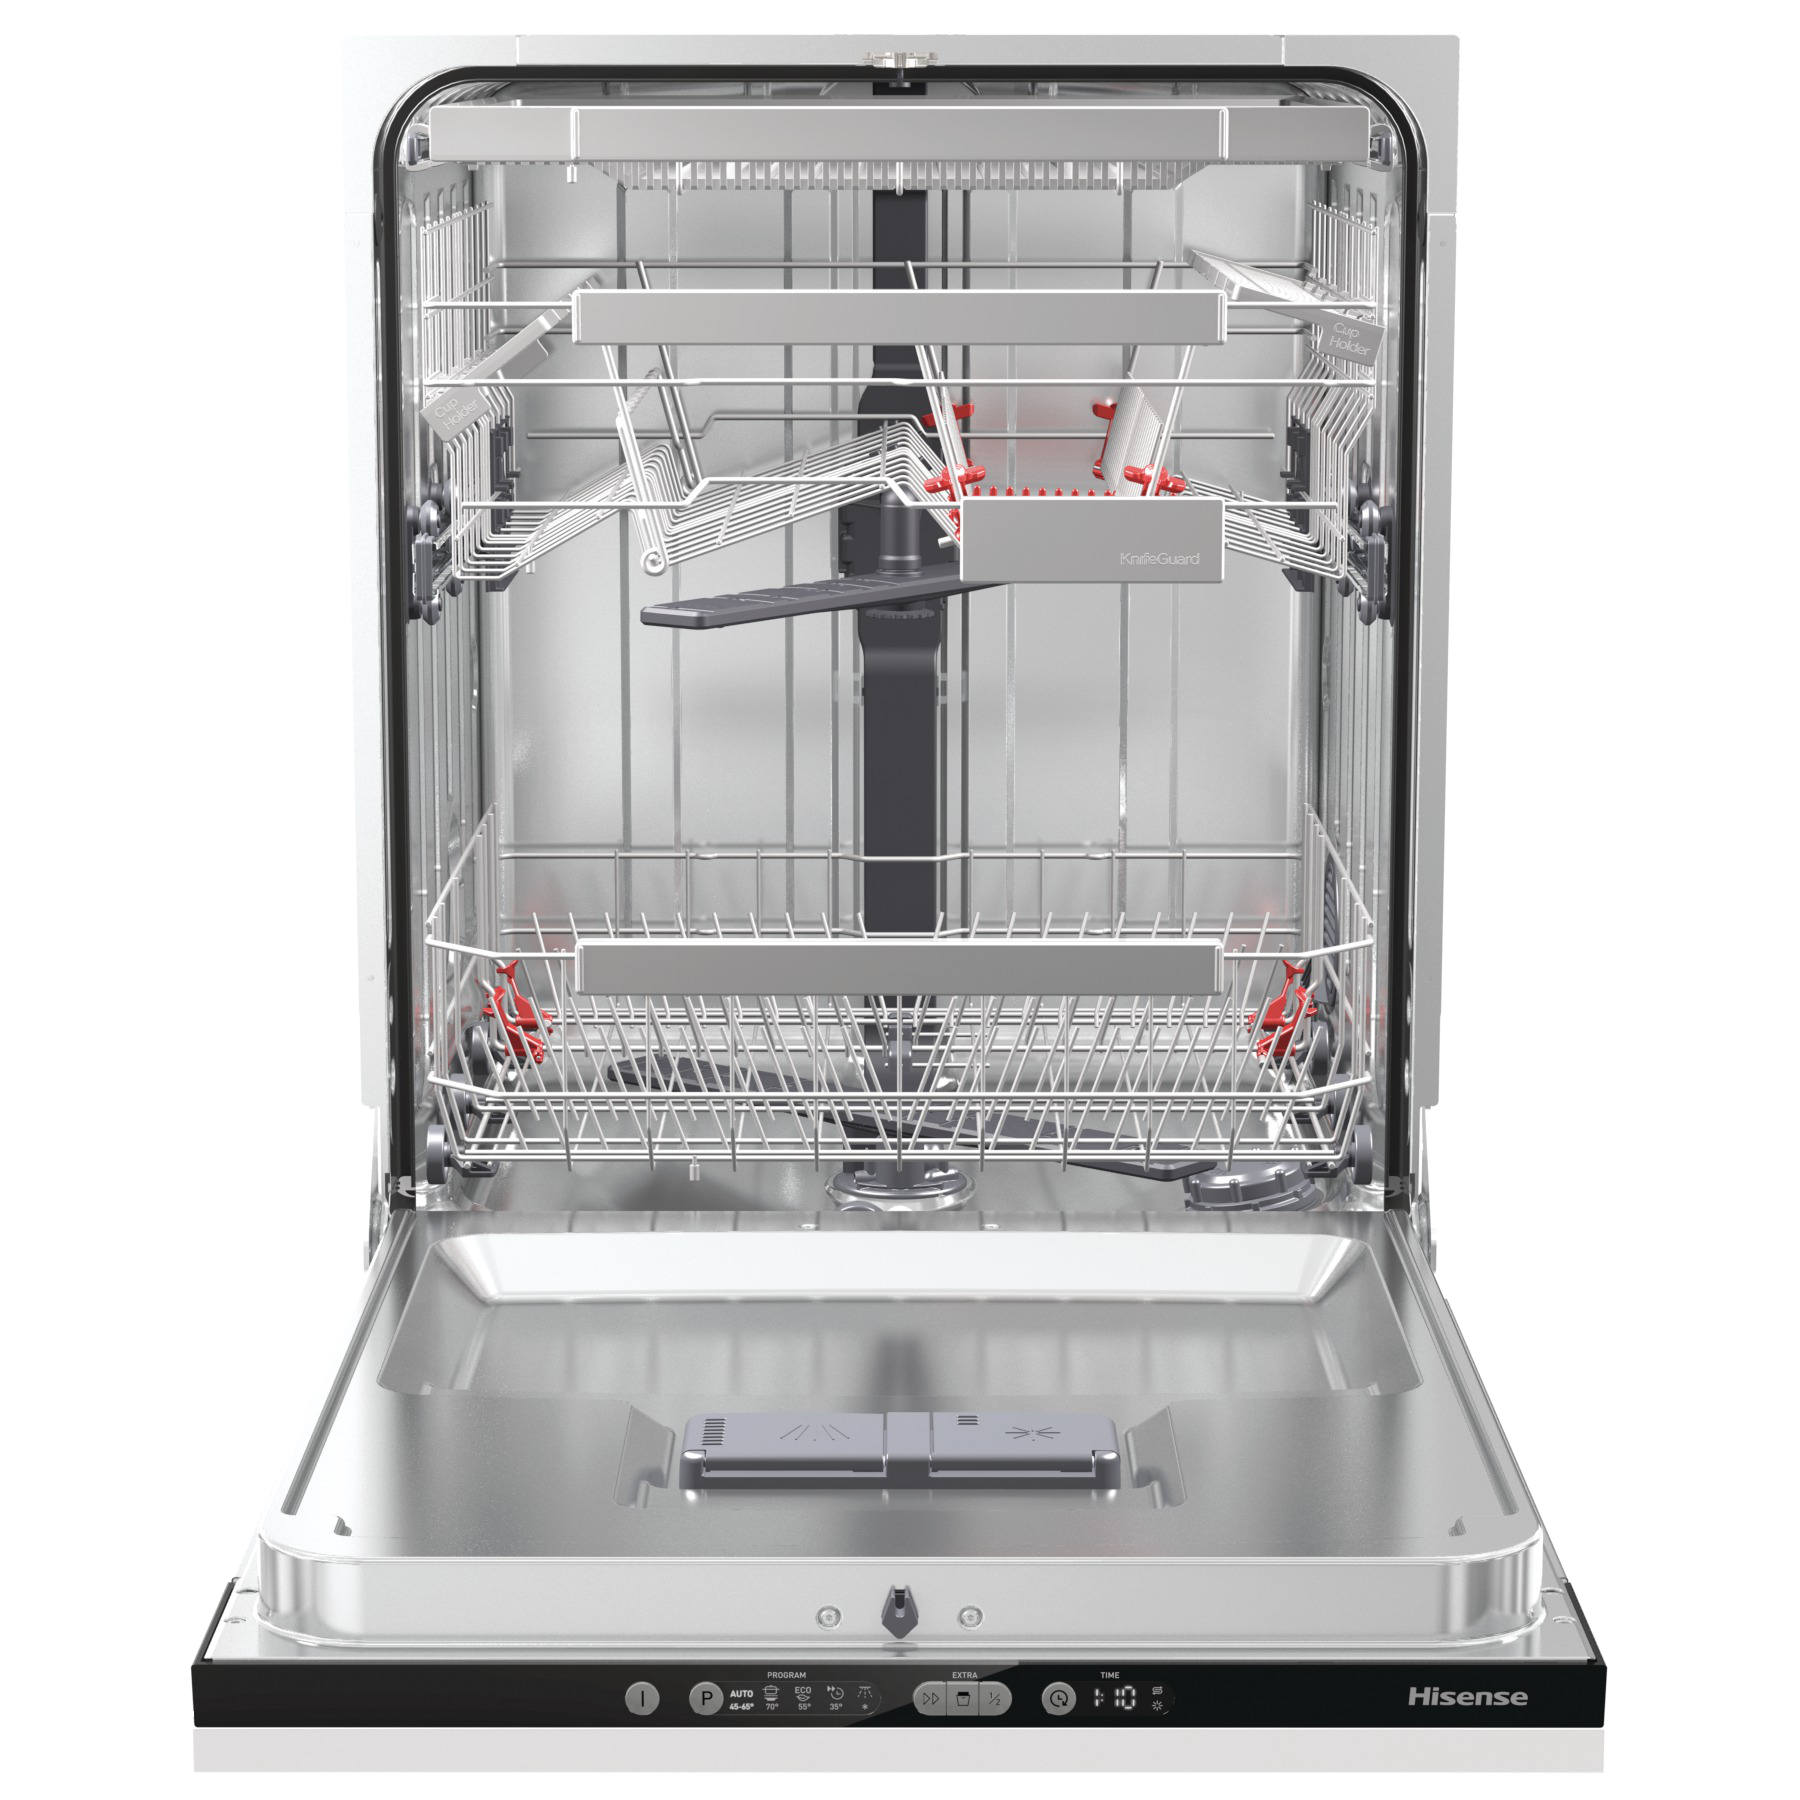 Hisense HV672C60UK Dishwasher